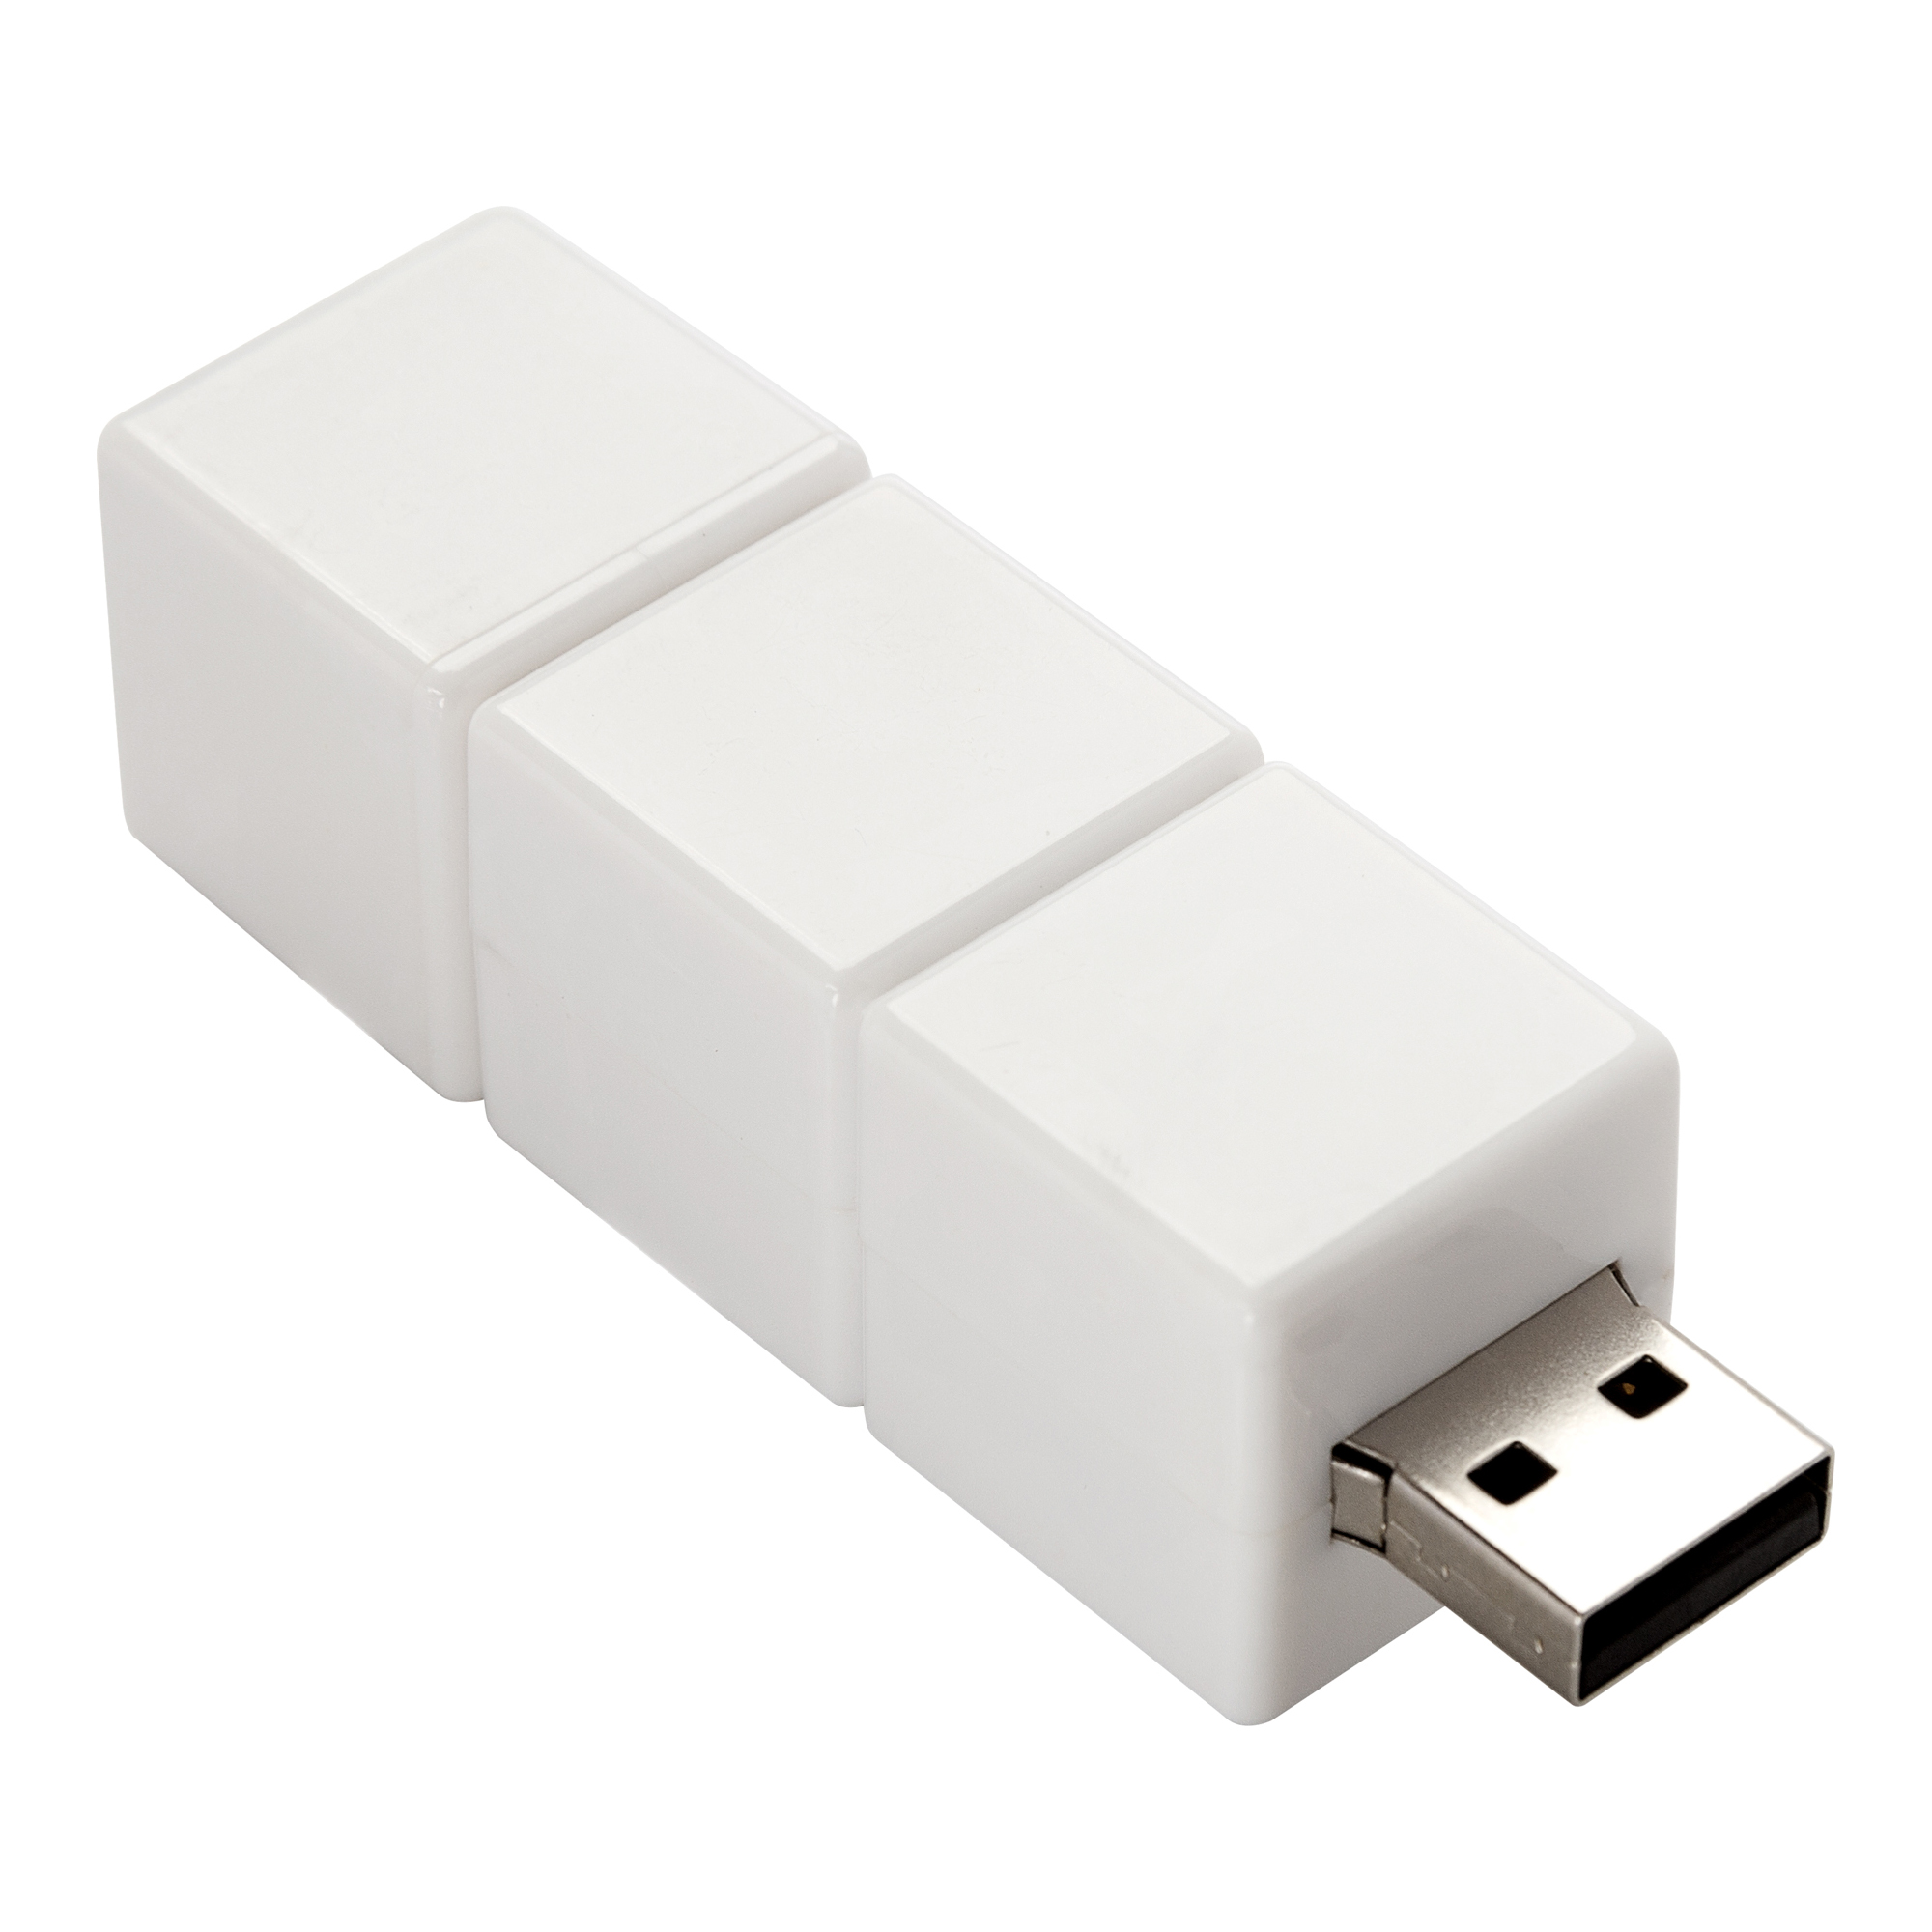 USB-флешка модель 101, объем памяти 512 MB, цвет белый